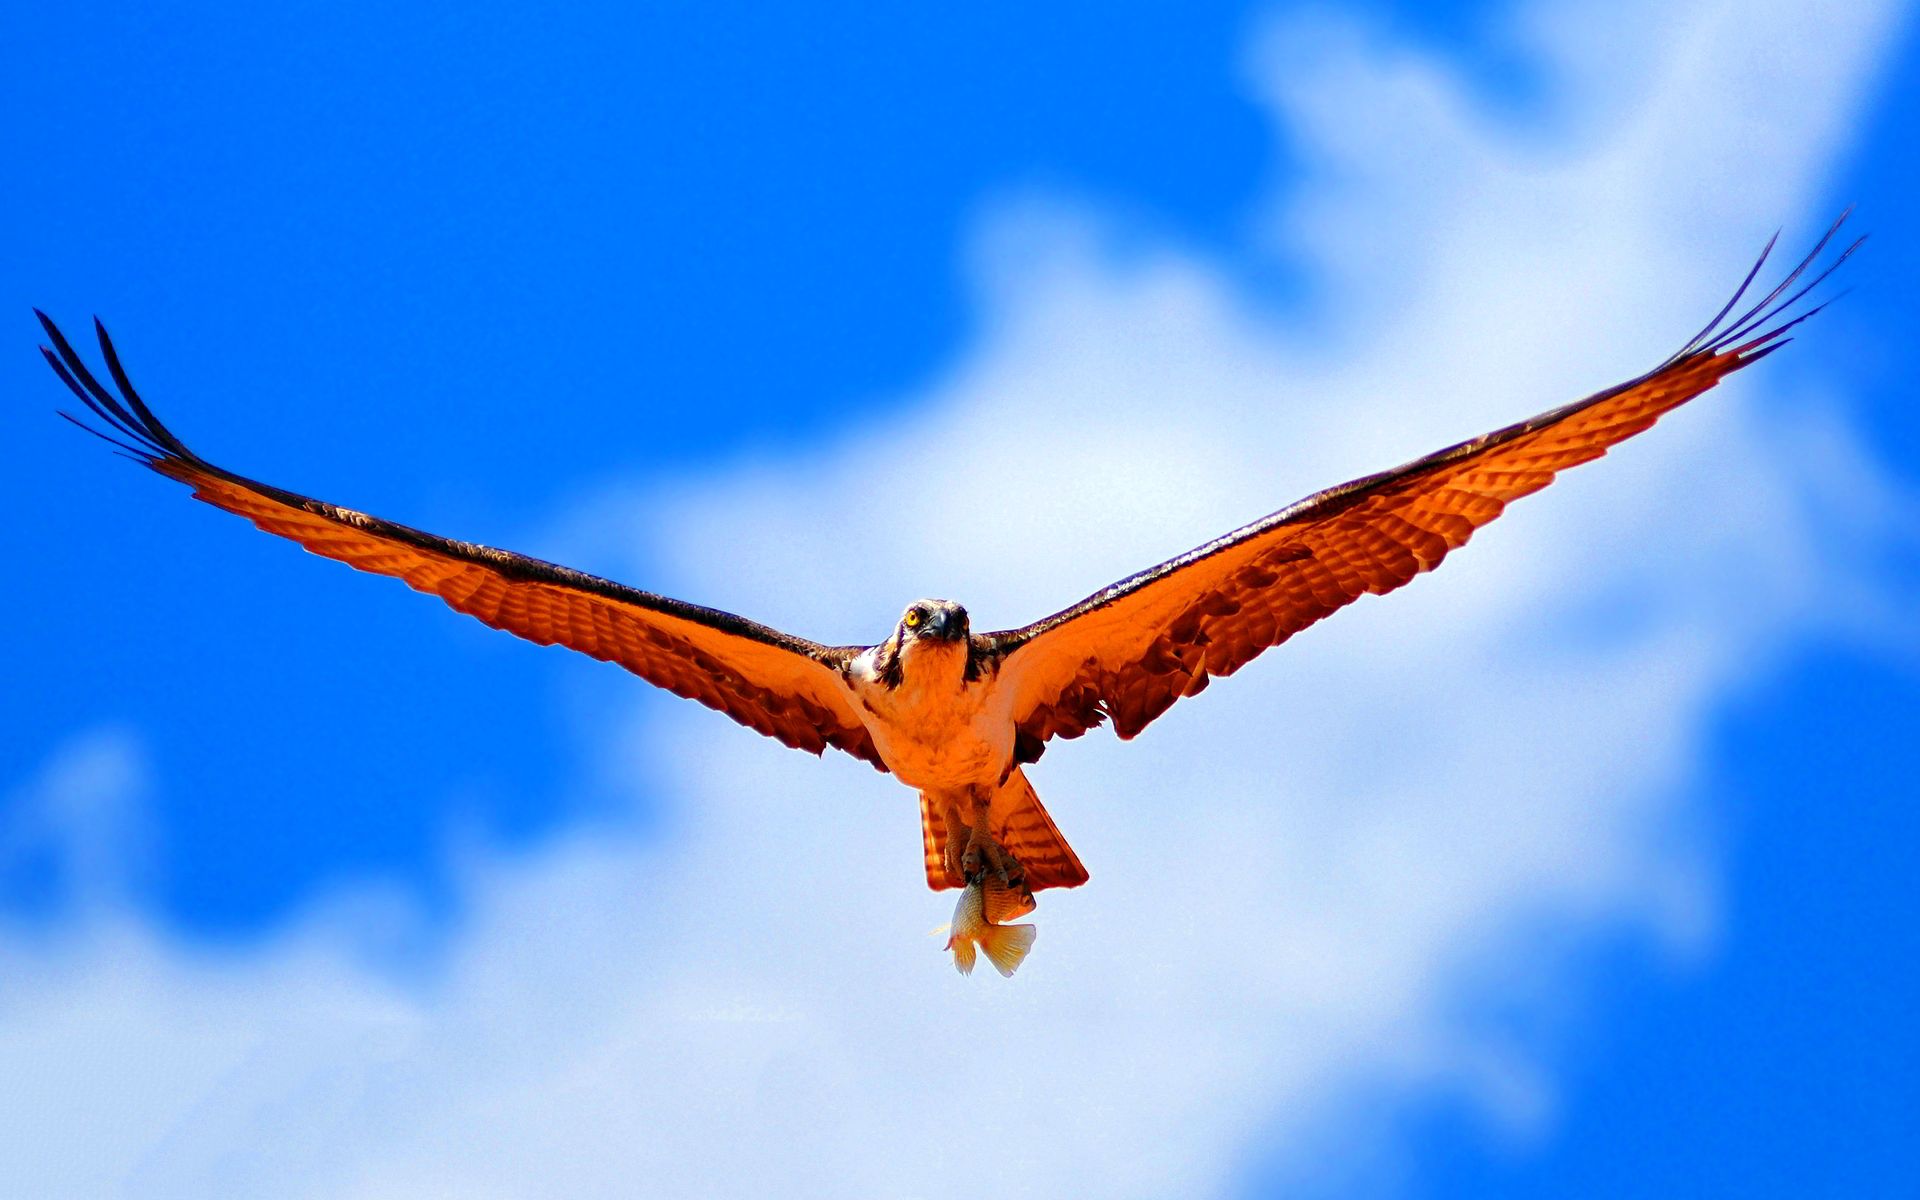 جدیدترین تصویر پرواز پرنده وحشی در آسمان مناسب چاپ تابلو